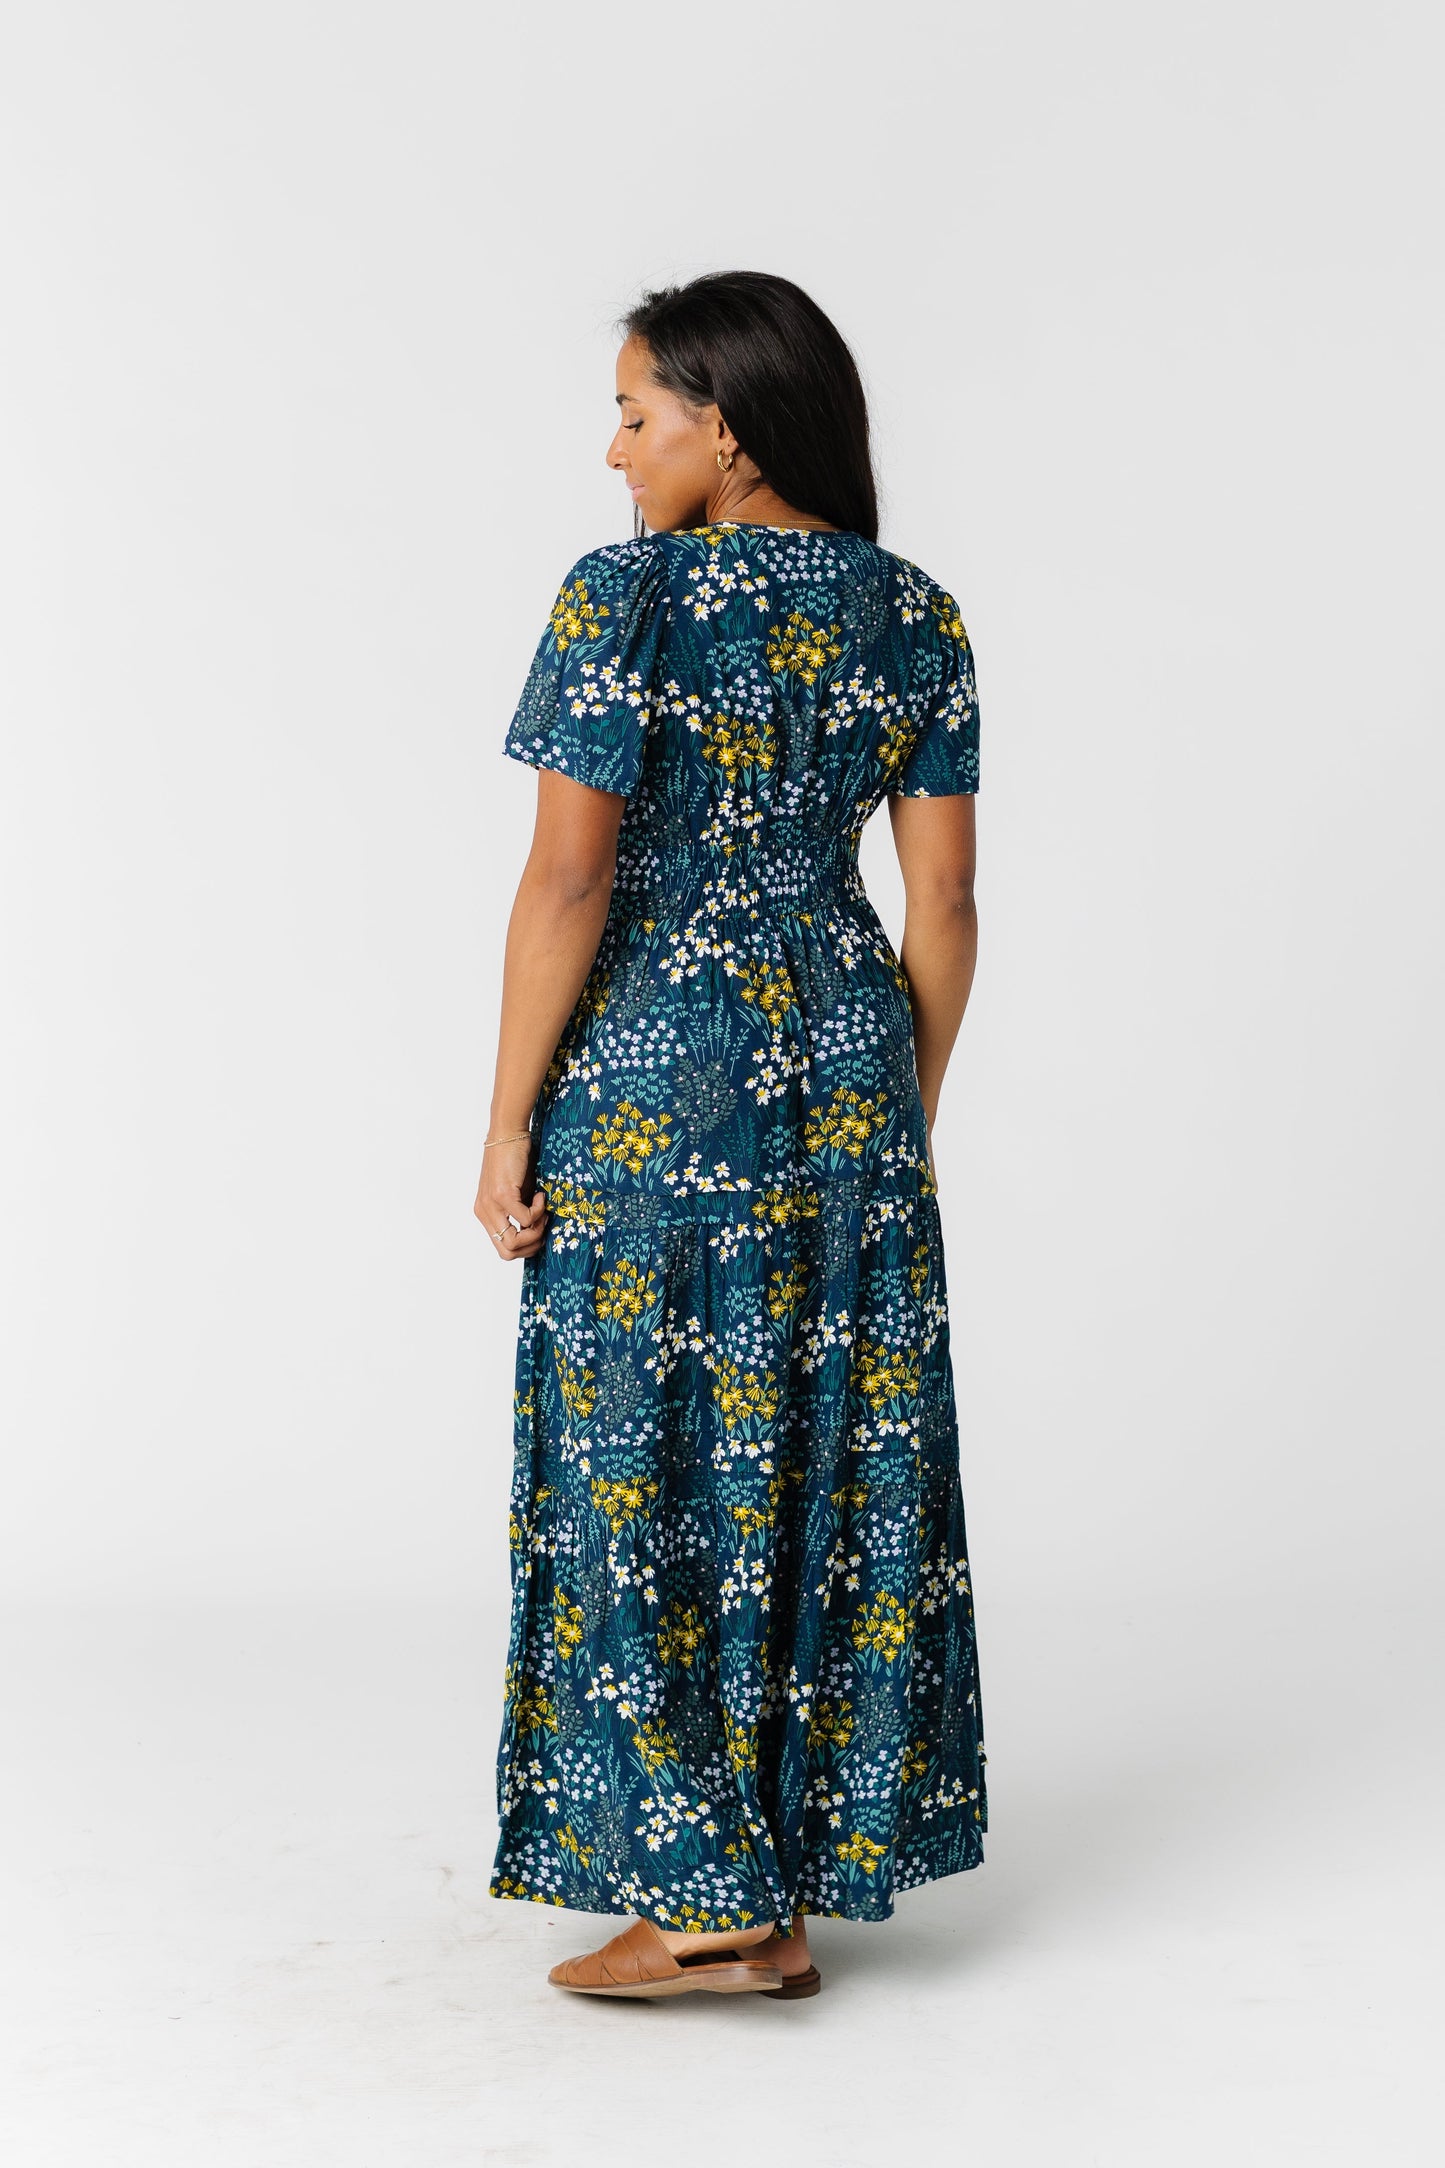 Citrus Shae Garden Print Dress WOMEN'S DRESS Citrus 